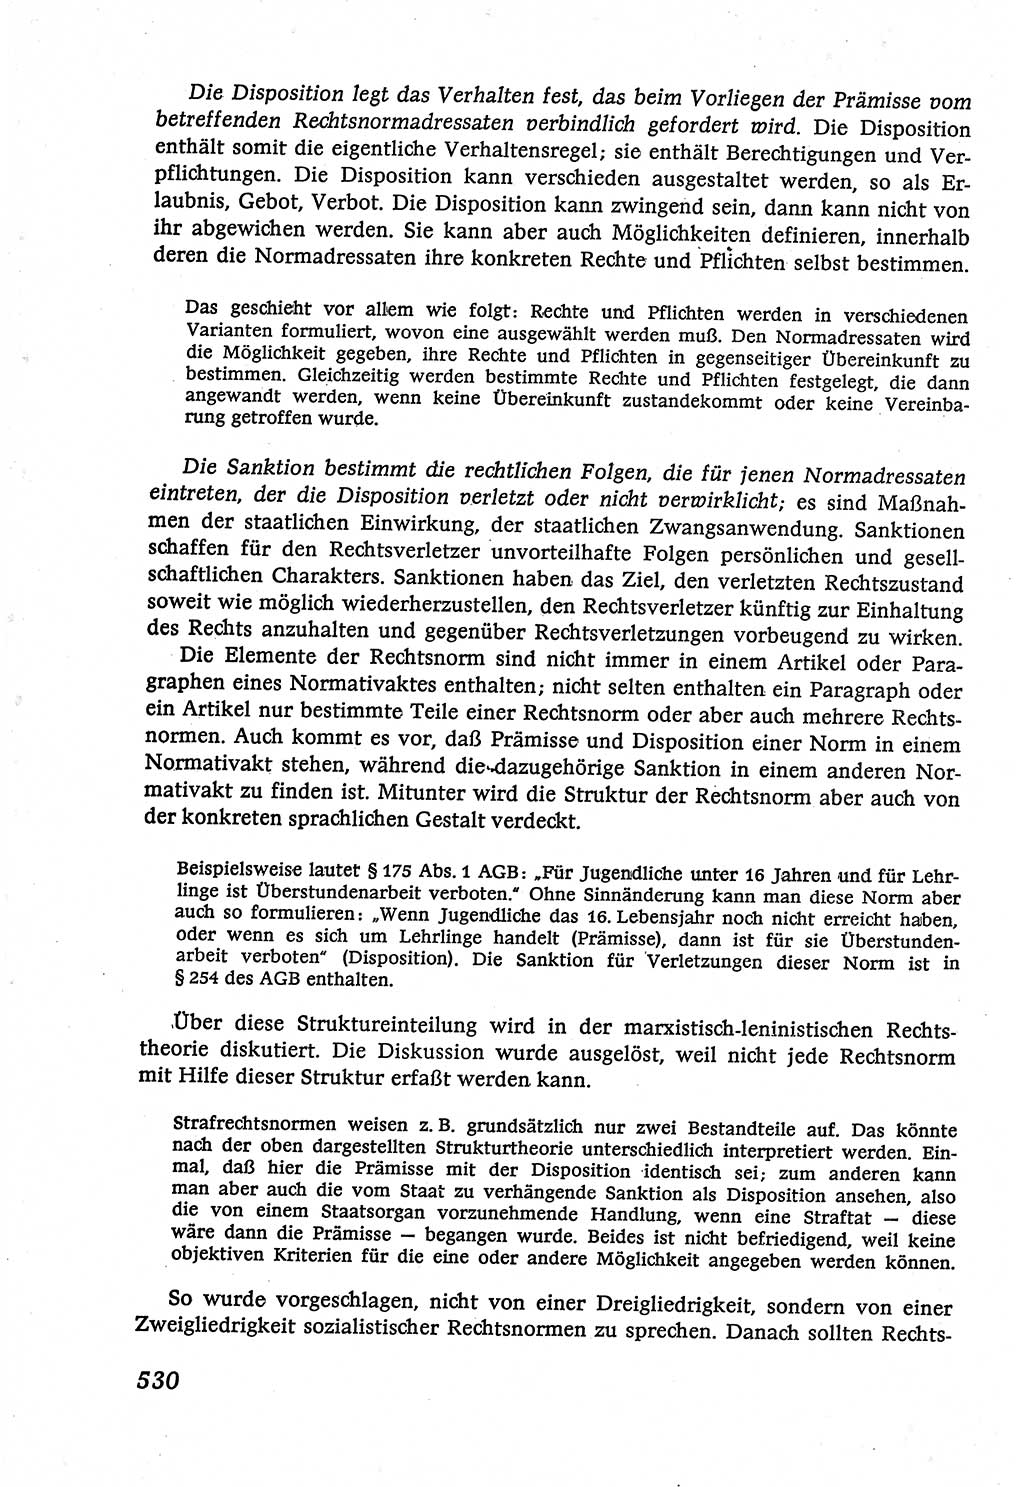 Marxistisch-leninistische (ML) Staats- und Rechtstheorie [Deutsche Demokratische Republik (DDR)], Lehrbuch 1980, Seite 530 (ML St.-R.-Th. DDR Lb. 1980, S. 530)